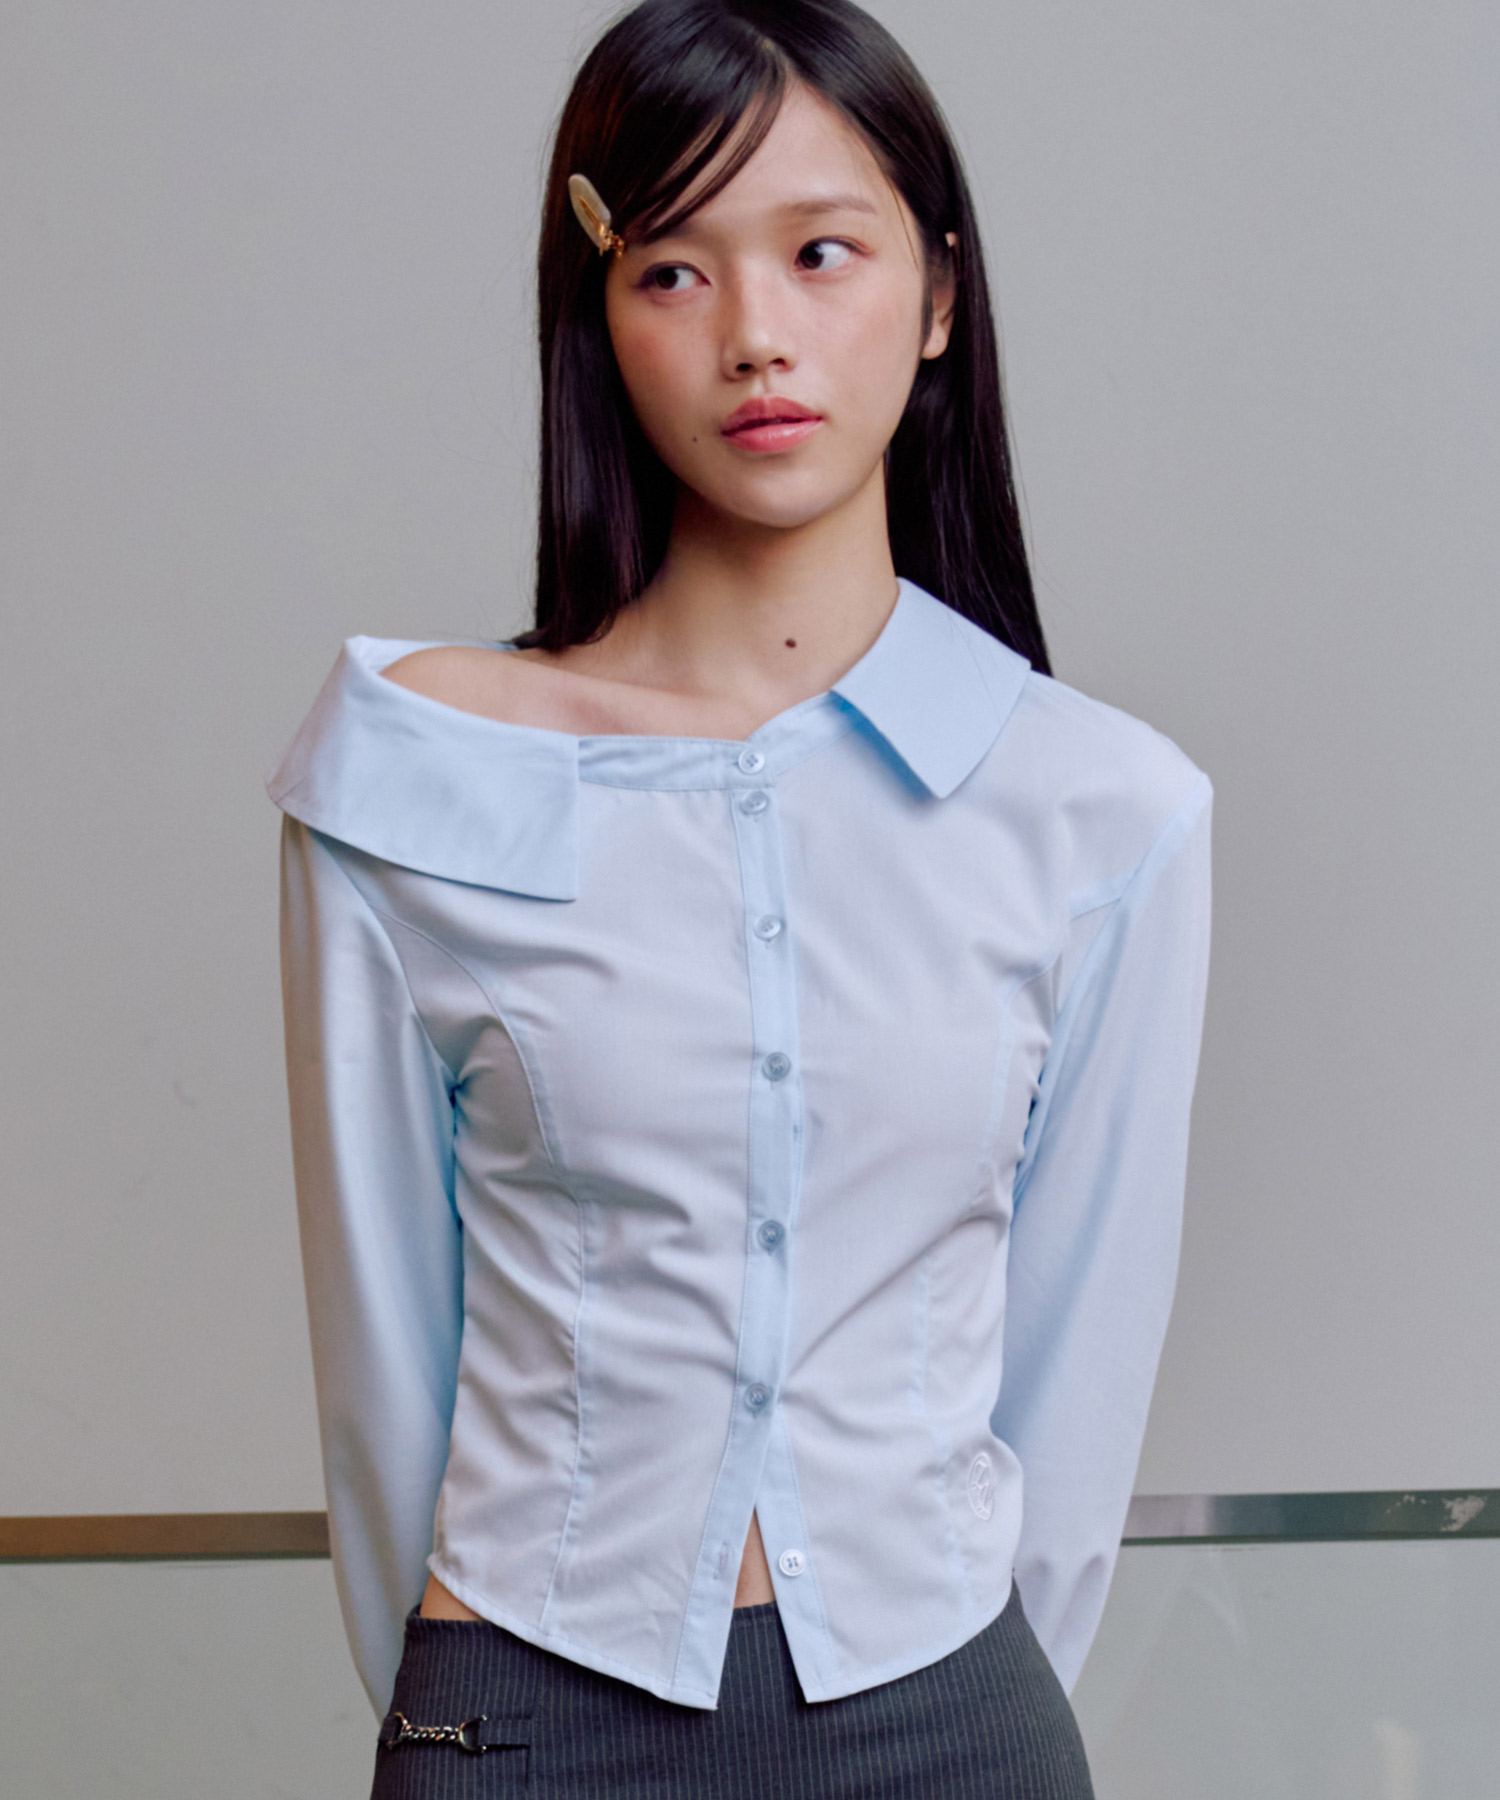 예약 배송 04월 17일_버니 오프숄더 셔츠 [BLUE] 김나영이 착용한 제로플래닛